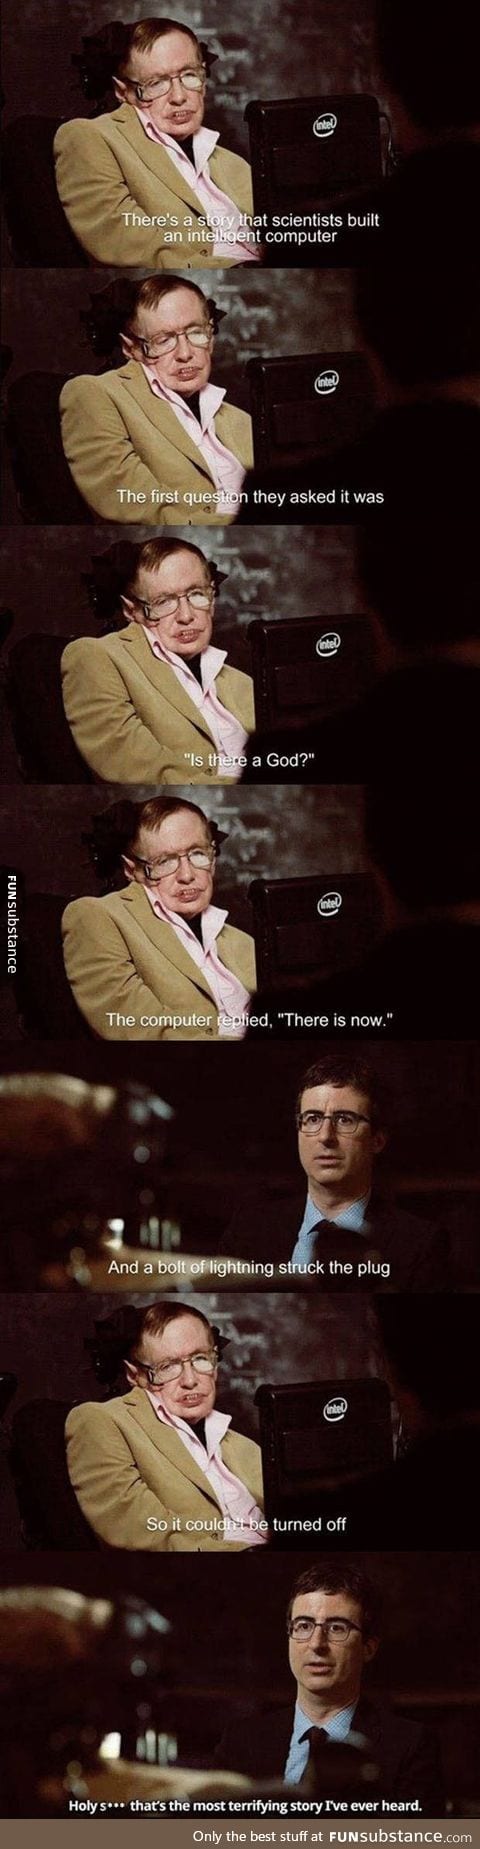 Stephen Hawking's interview